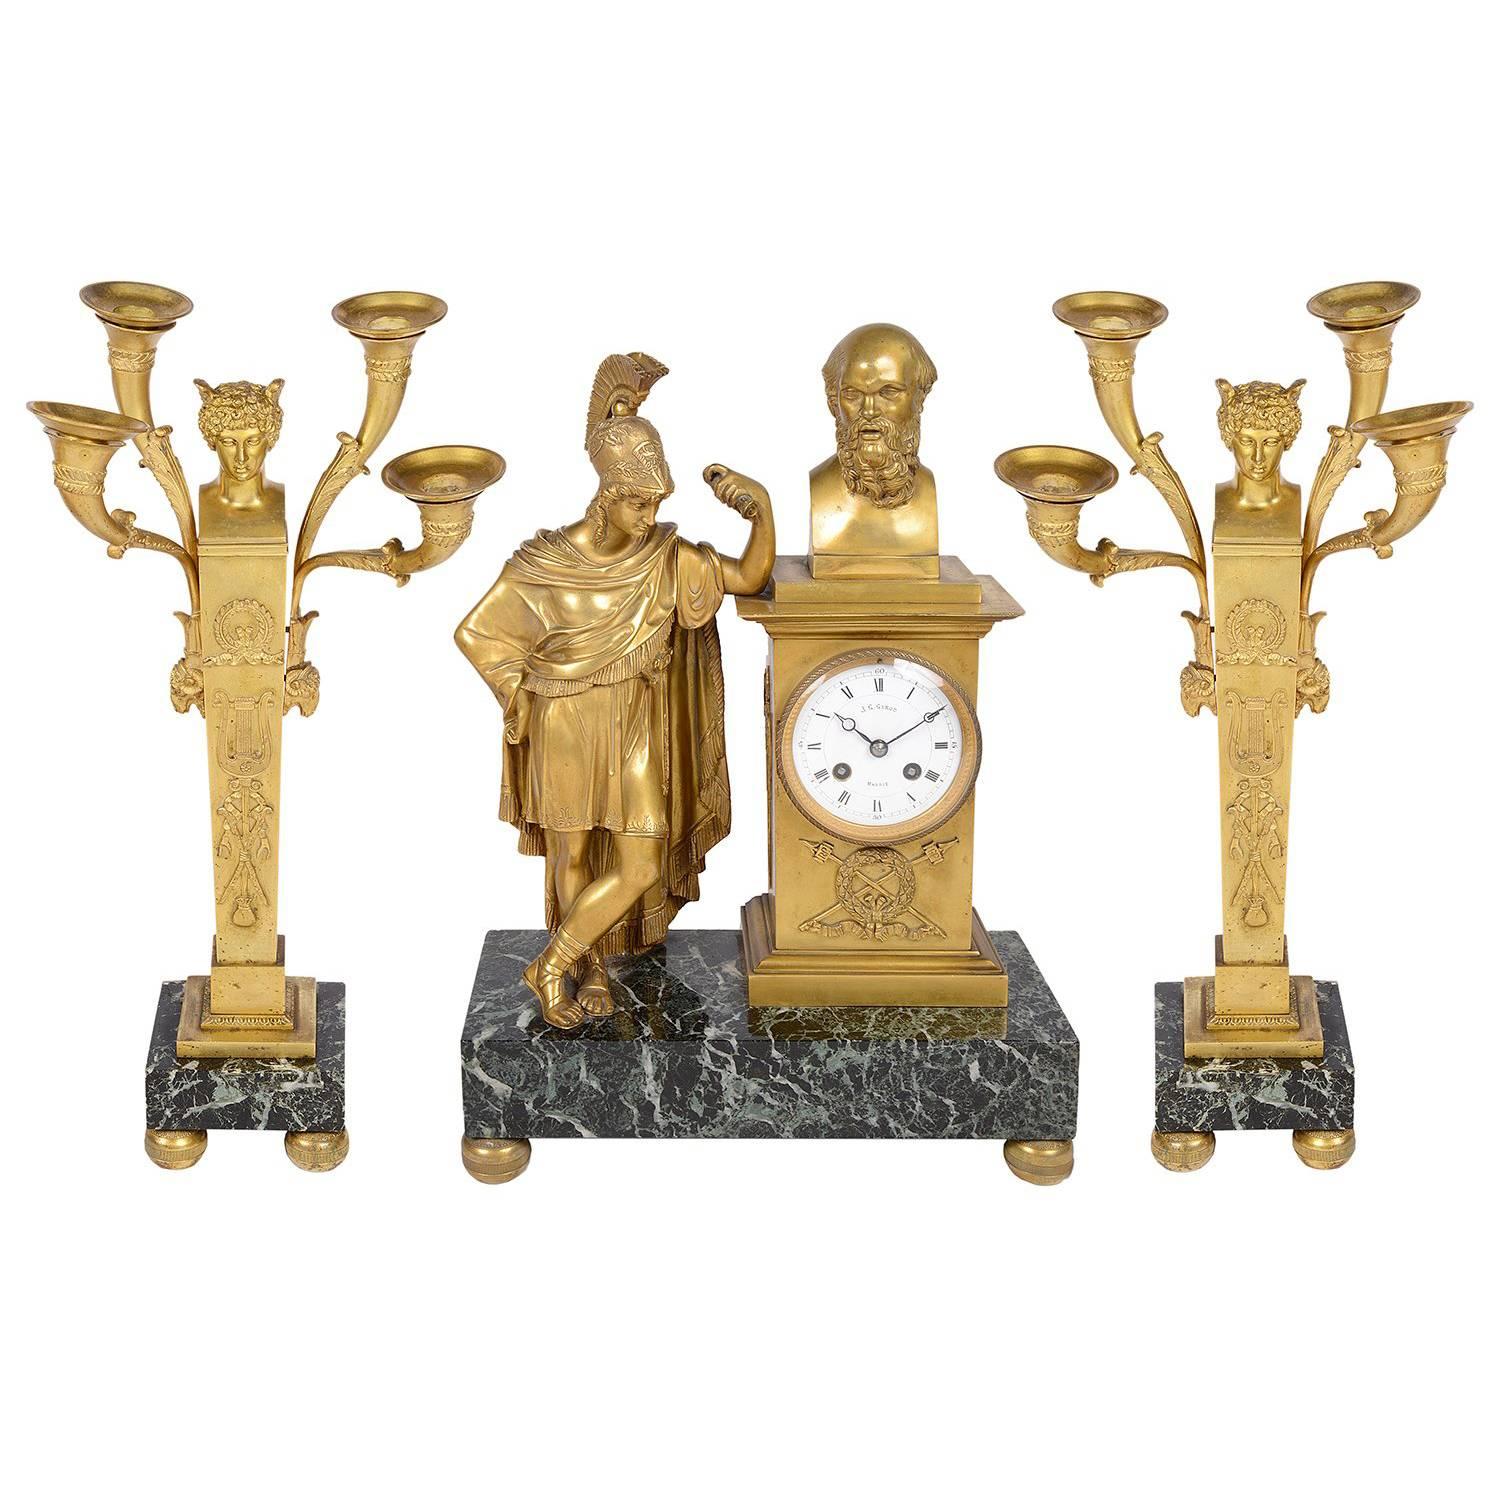 Ensemble d'horloge et de candélabres du XIXe siècle français avec centenaire romain